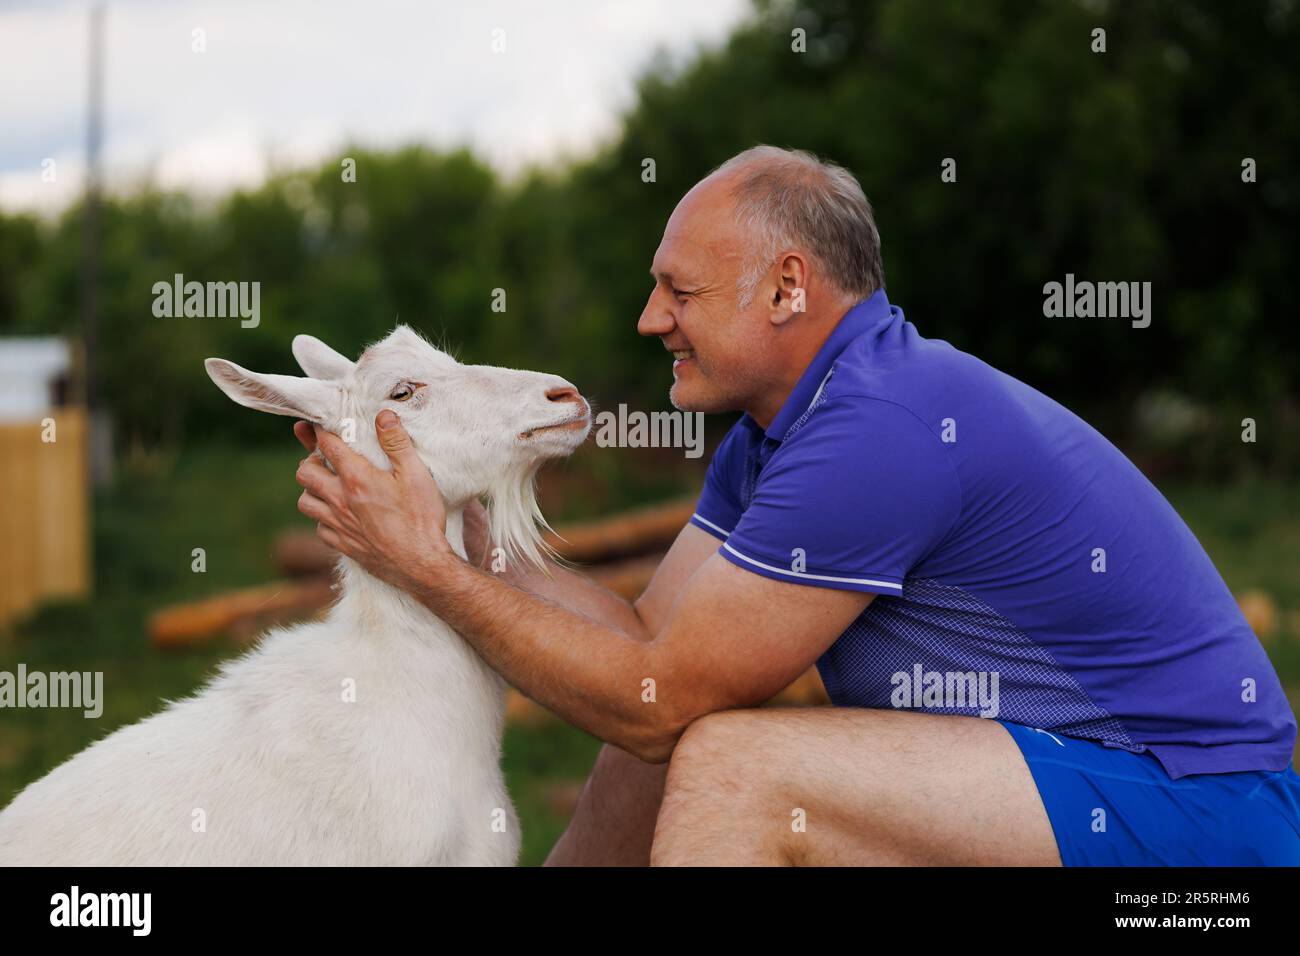 un homme d'âge moyen parle face à face à une chèvre blanche et sourit Banque D'Images